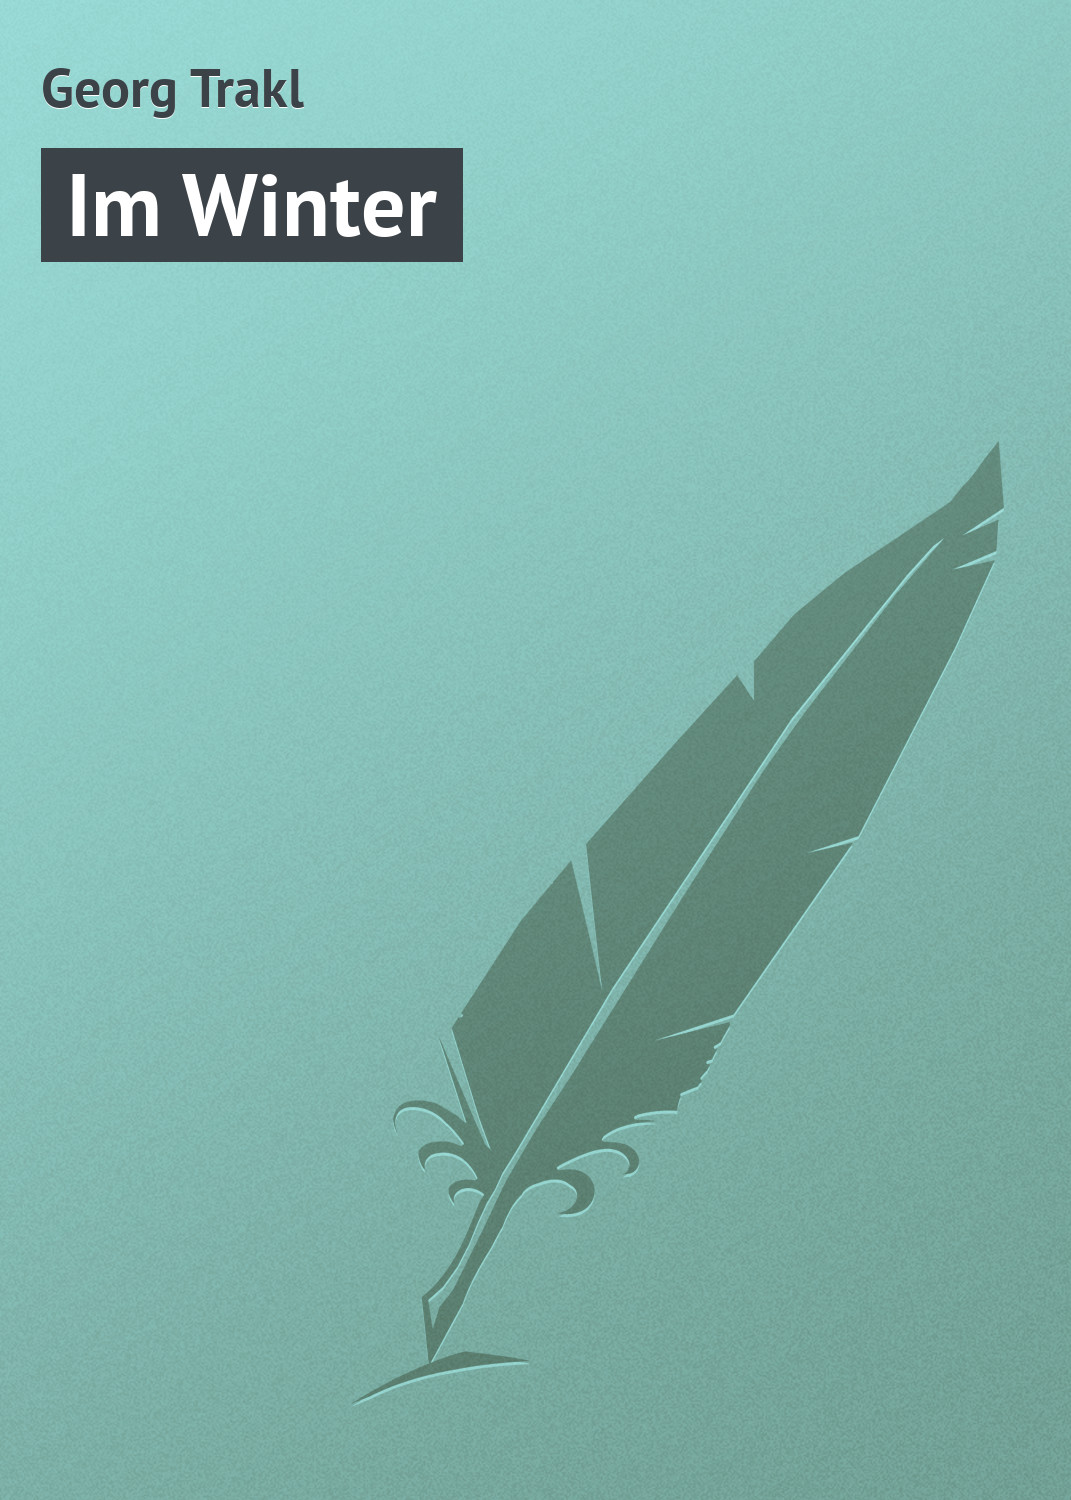 Книга Im Winter из серии , созданная Georg Trakl, может относится к жанру Поэзия. Стоимость электронной книги Im Winter с идентификатором 18405373 составляет 5.99 руб.